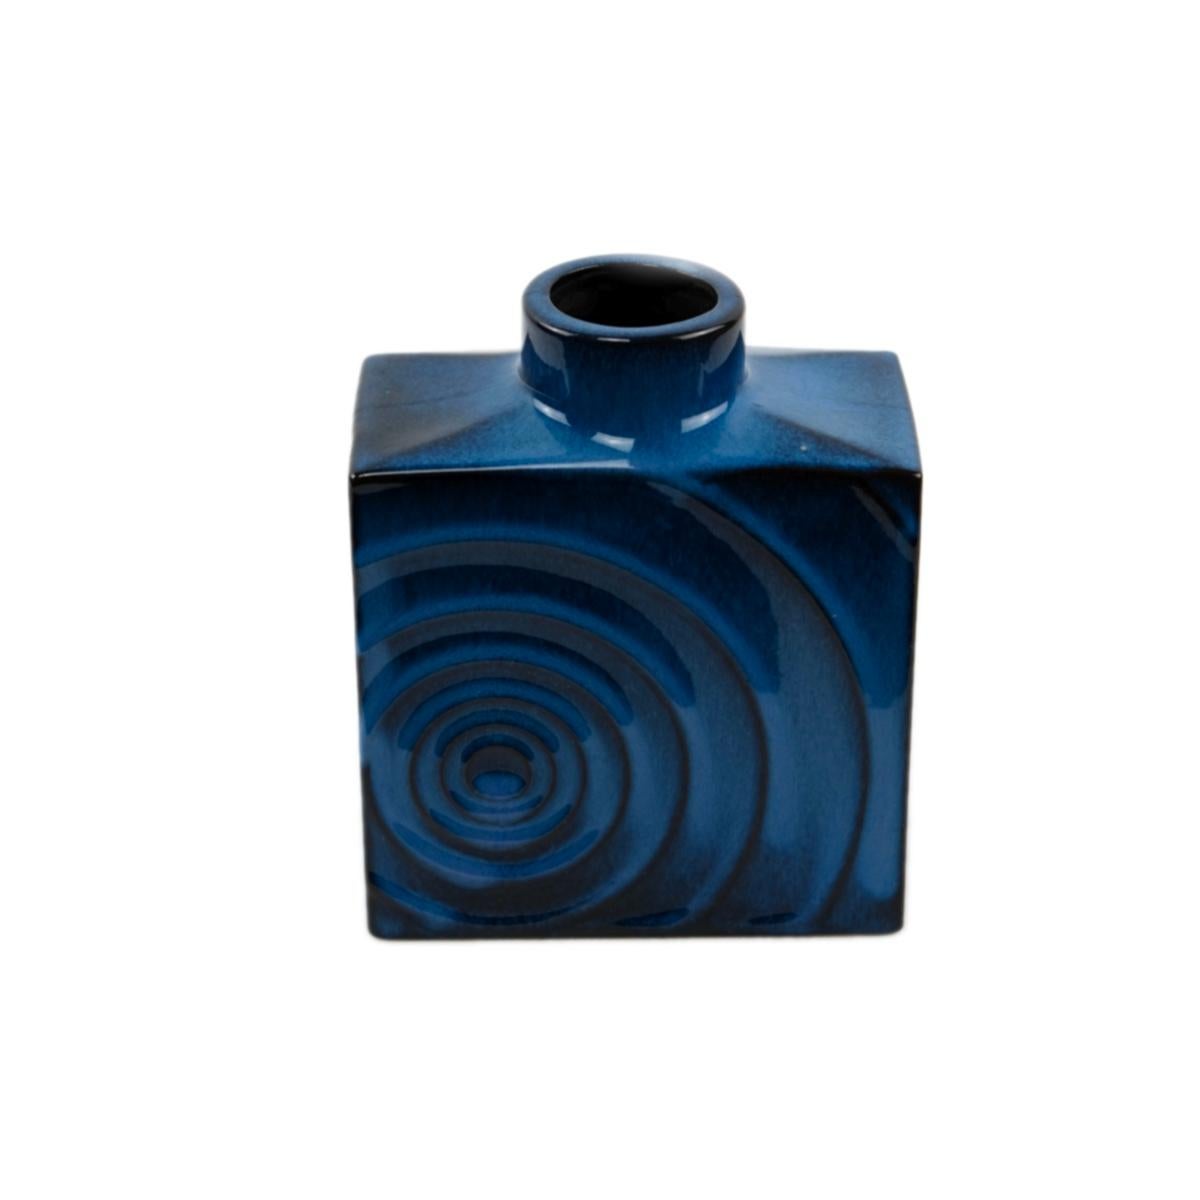 Satz von 3 Cari Zalloni für Steuler Keramik blau-schwarz 